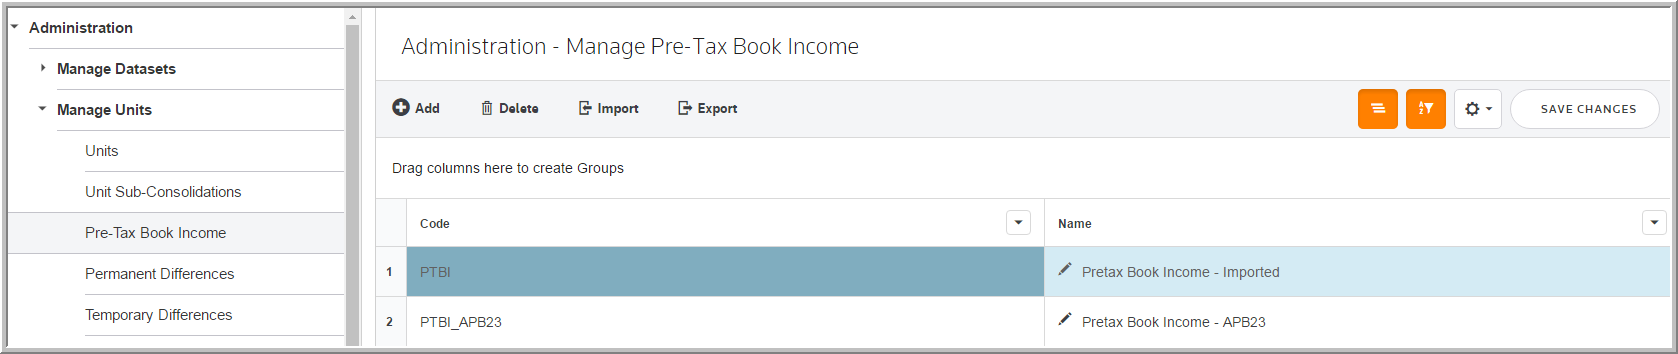 2016 pre tax book income